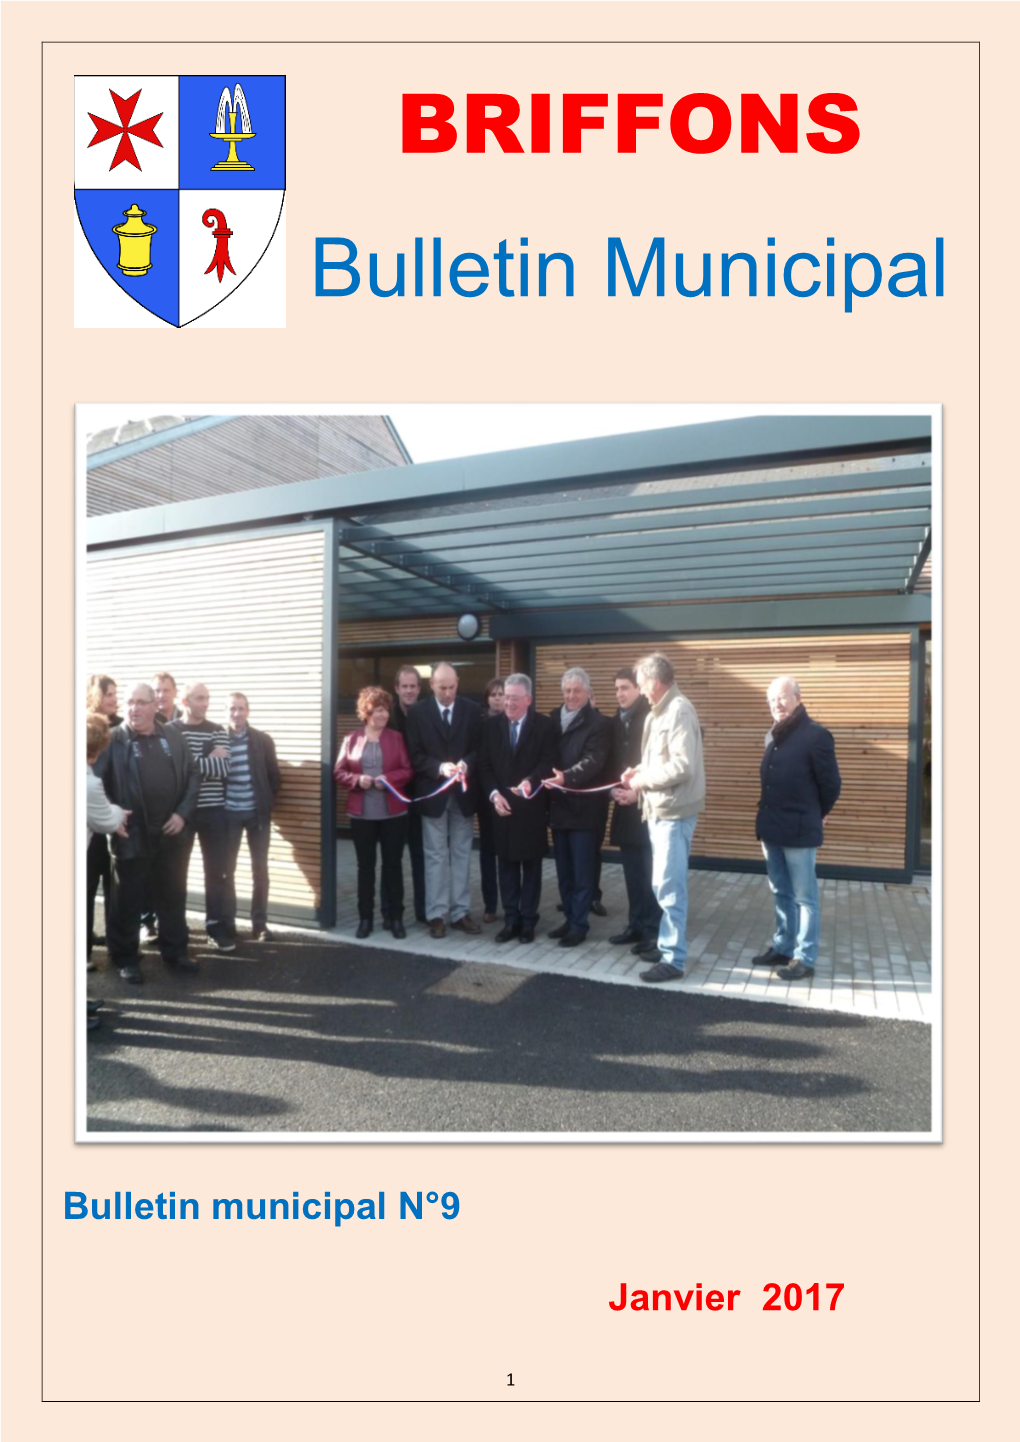 Bulletin Municipal 2017